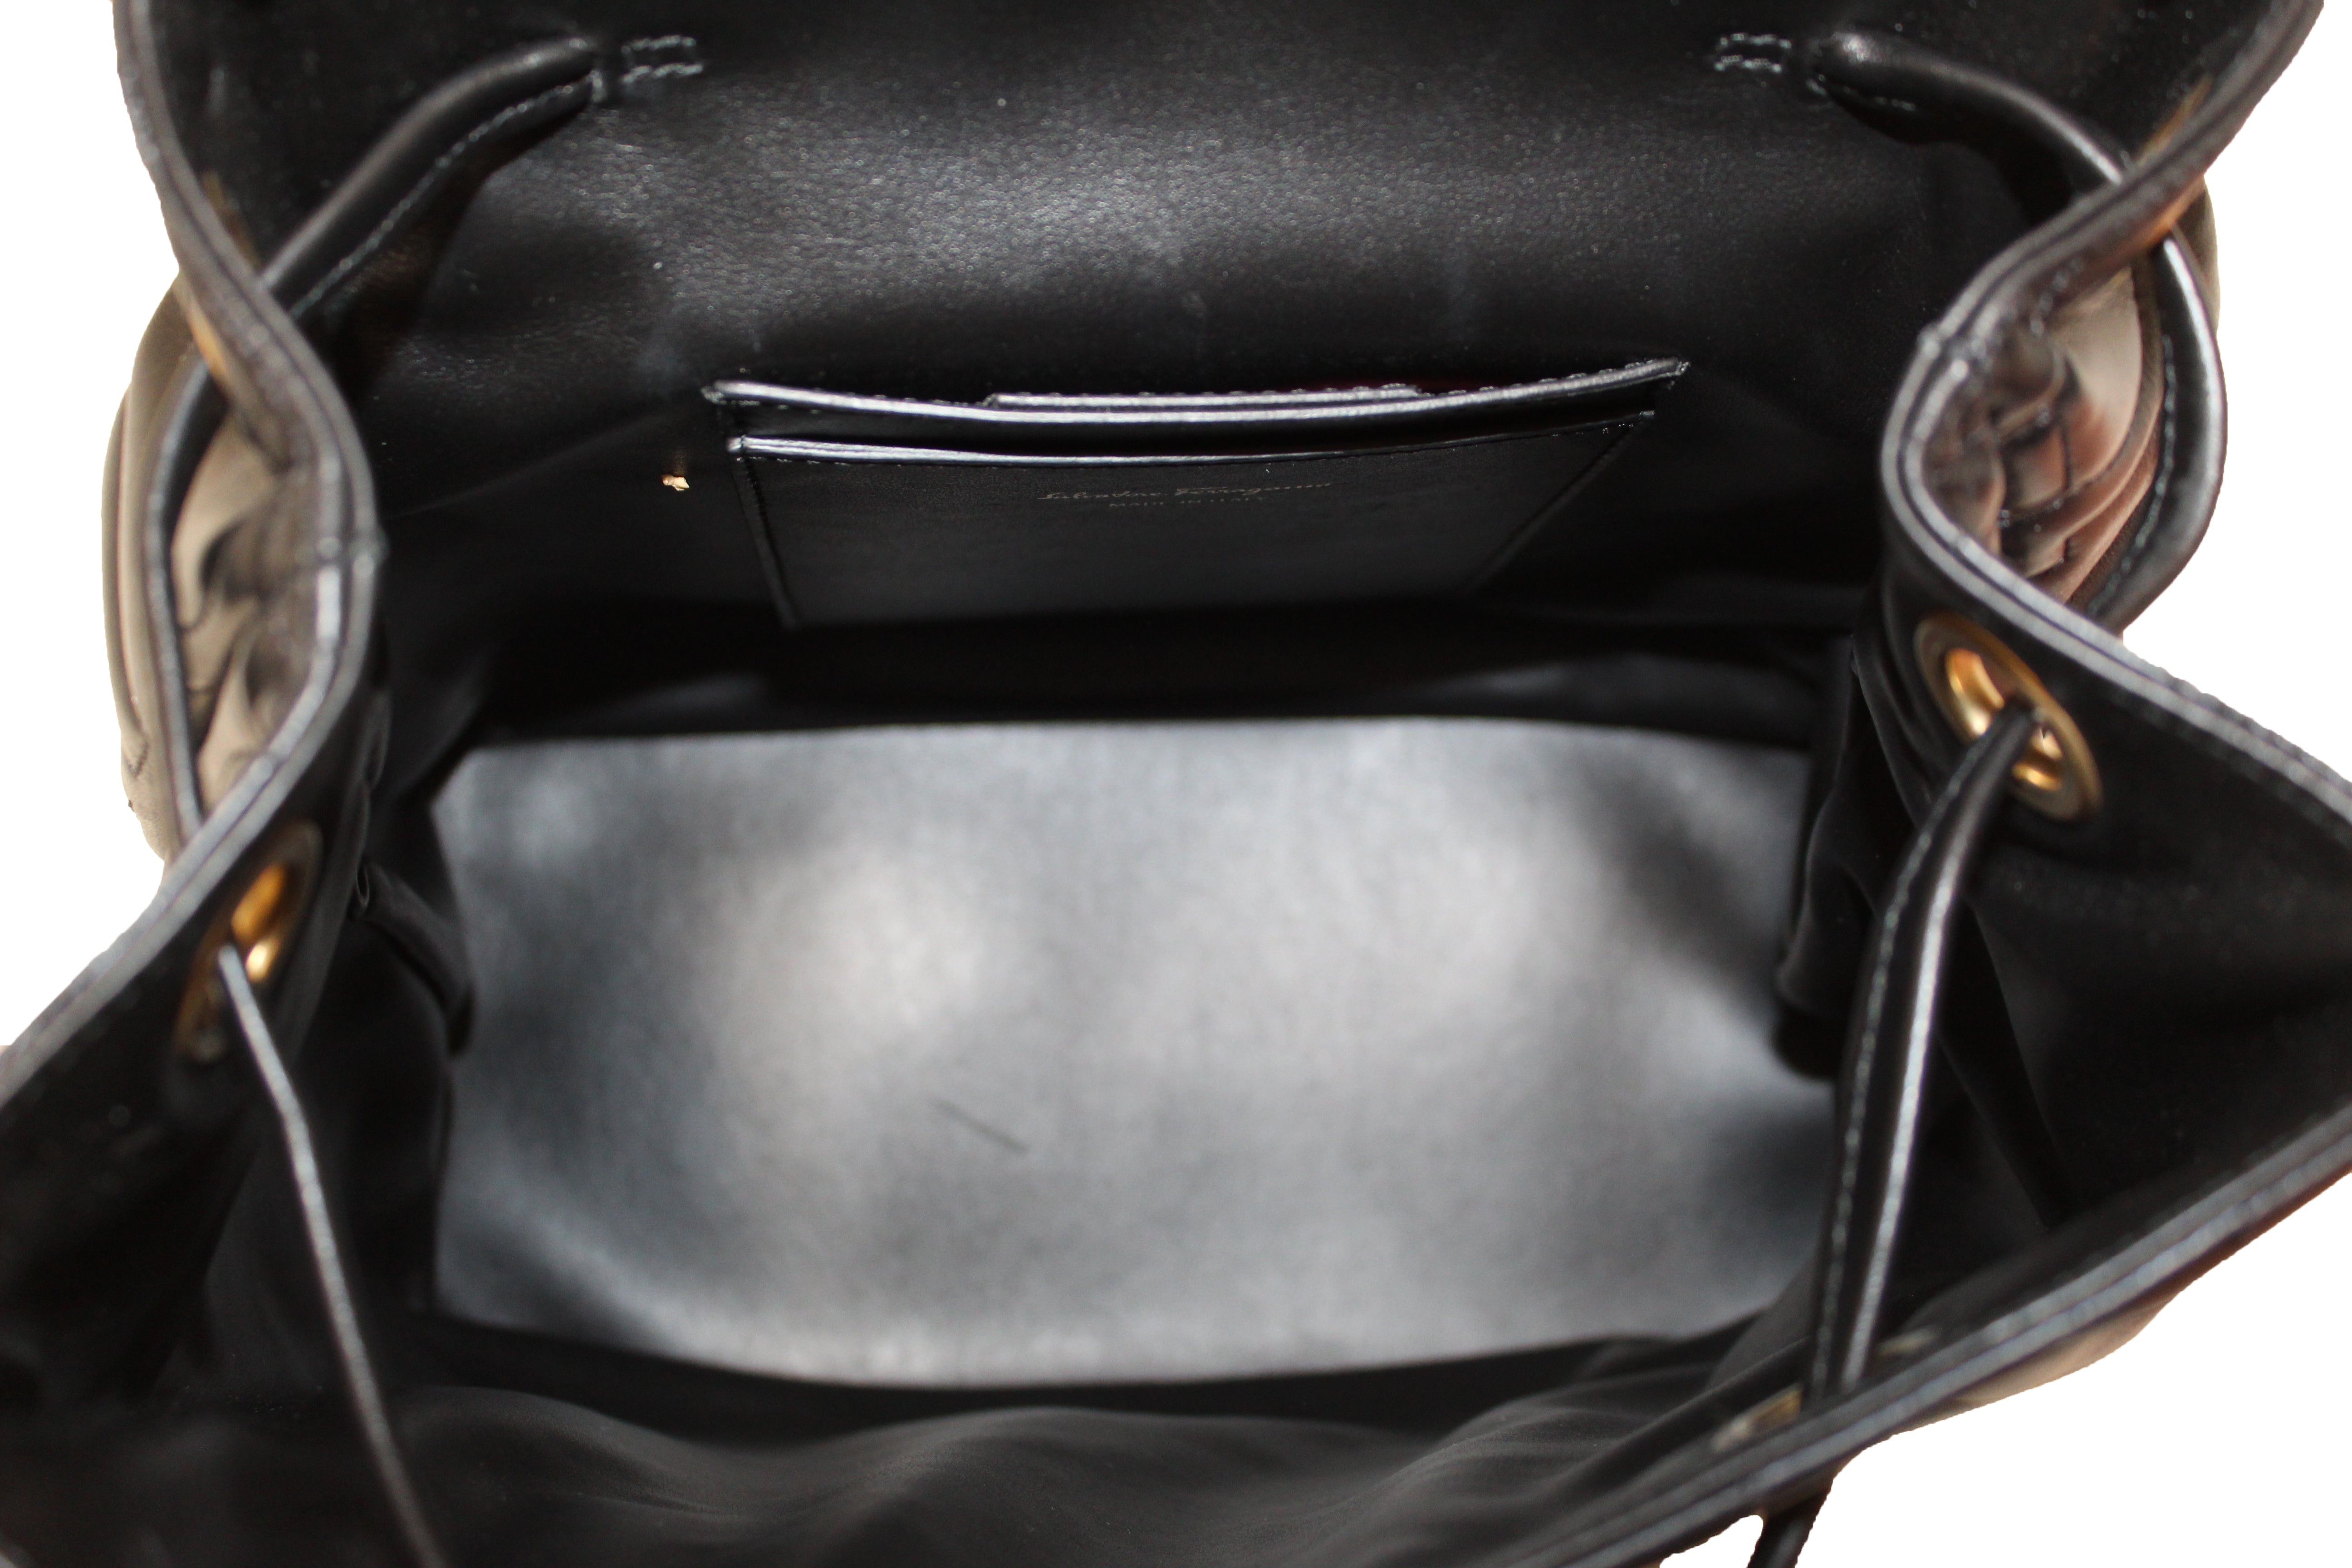 Authentic Salvatore Ferragamo Black Gancini Quilted Leather Medium Backpack